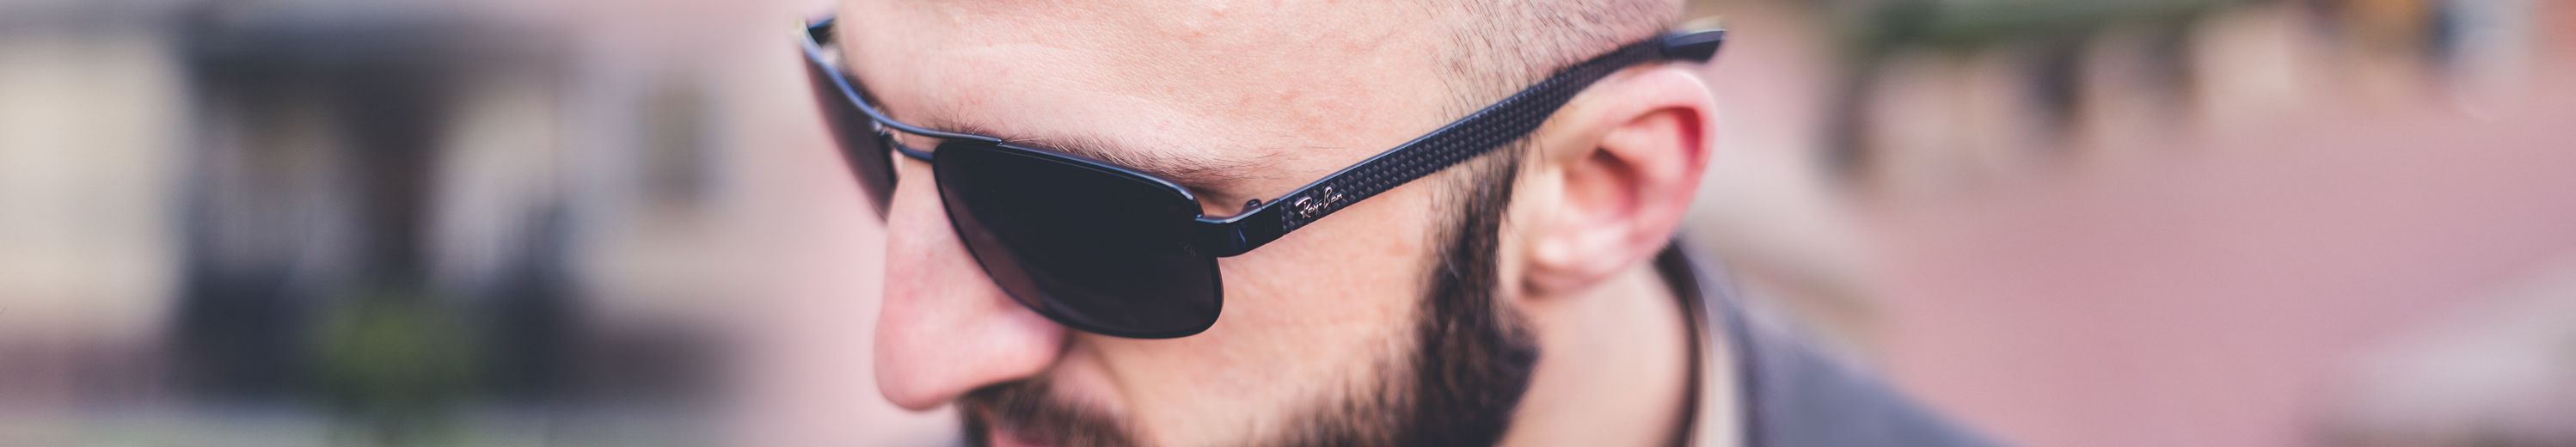 Carbon Fiber Glasses Frames for Men and Women